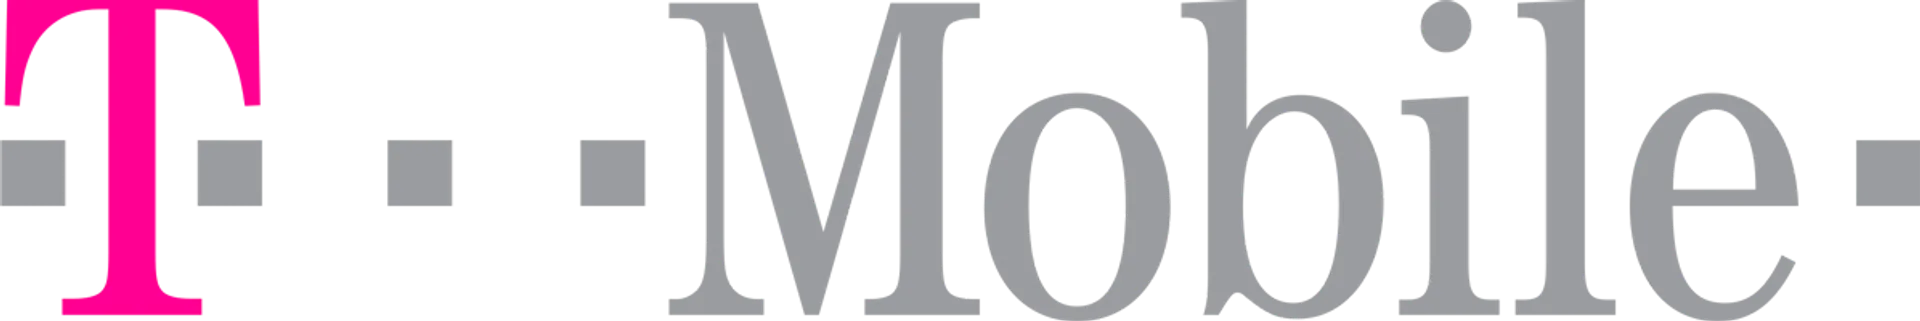 T-MOBILE logo